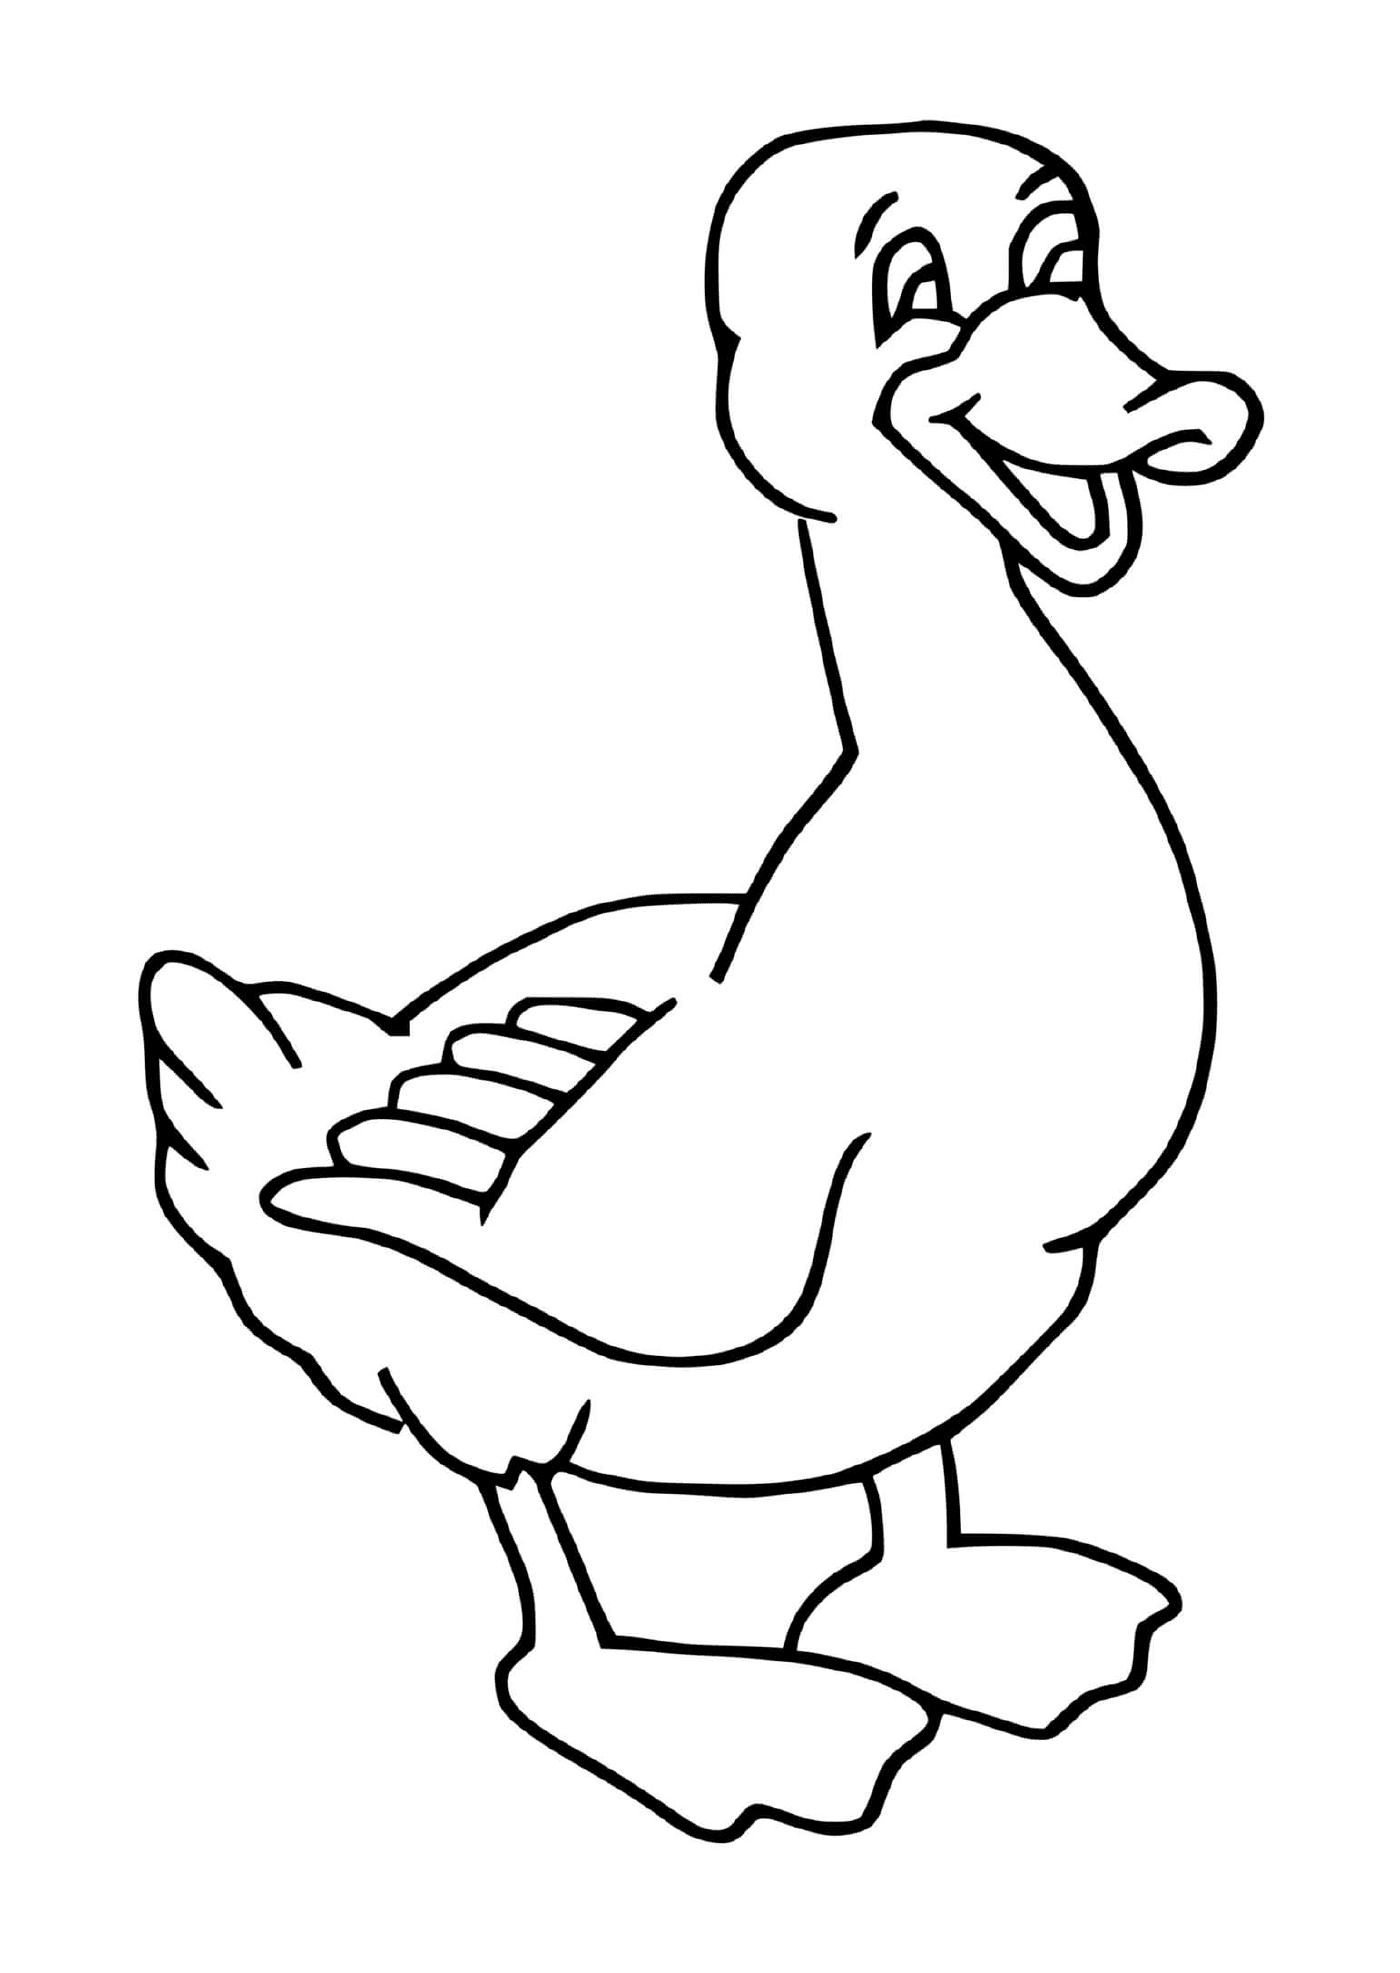  um pato selvagem em uma pata com um bico aberto 